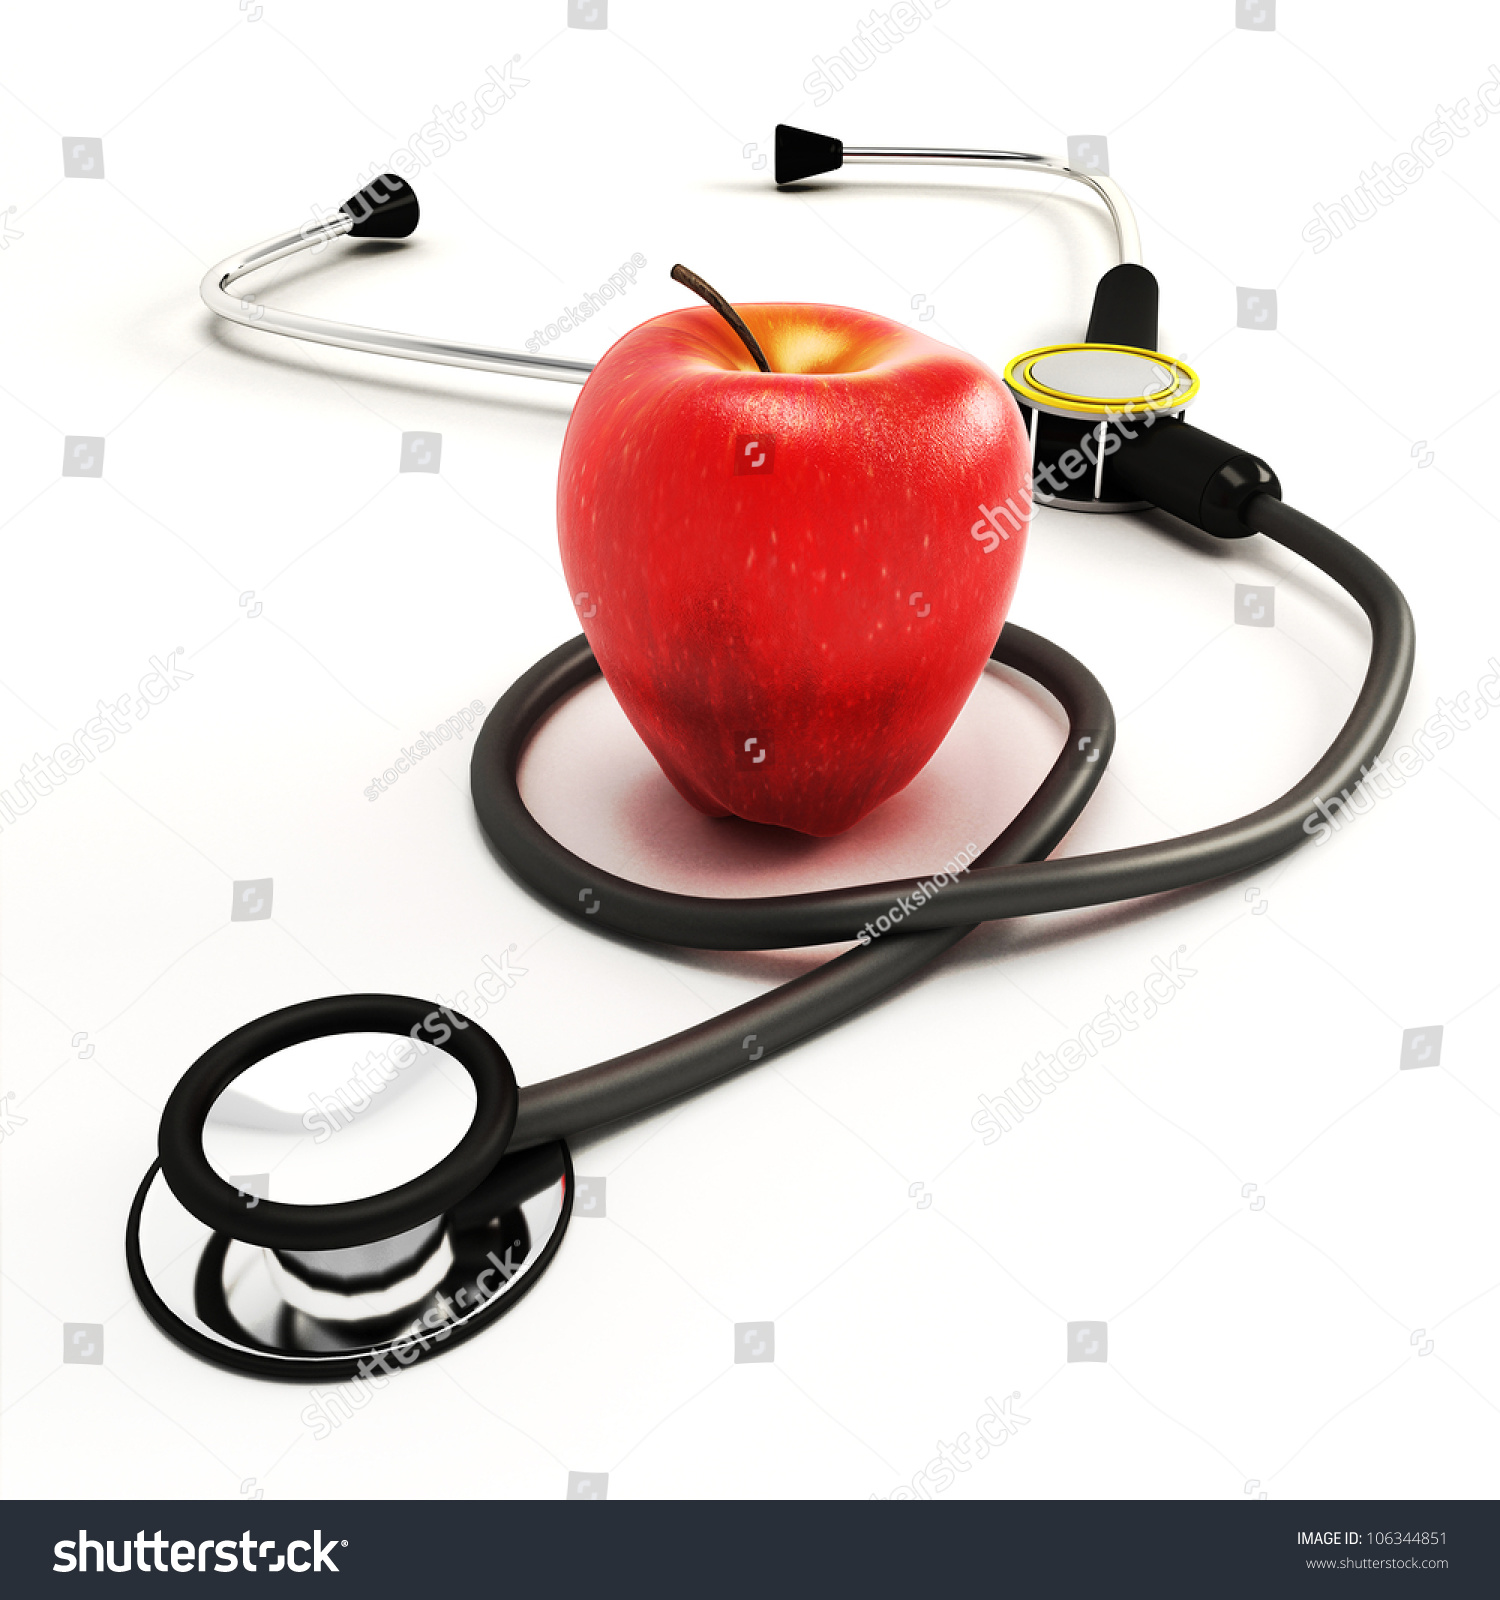 3d Image Stethoscope Apple Against White Stock Illustration ...